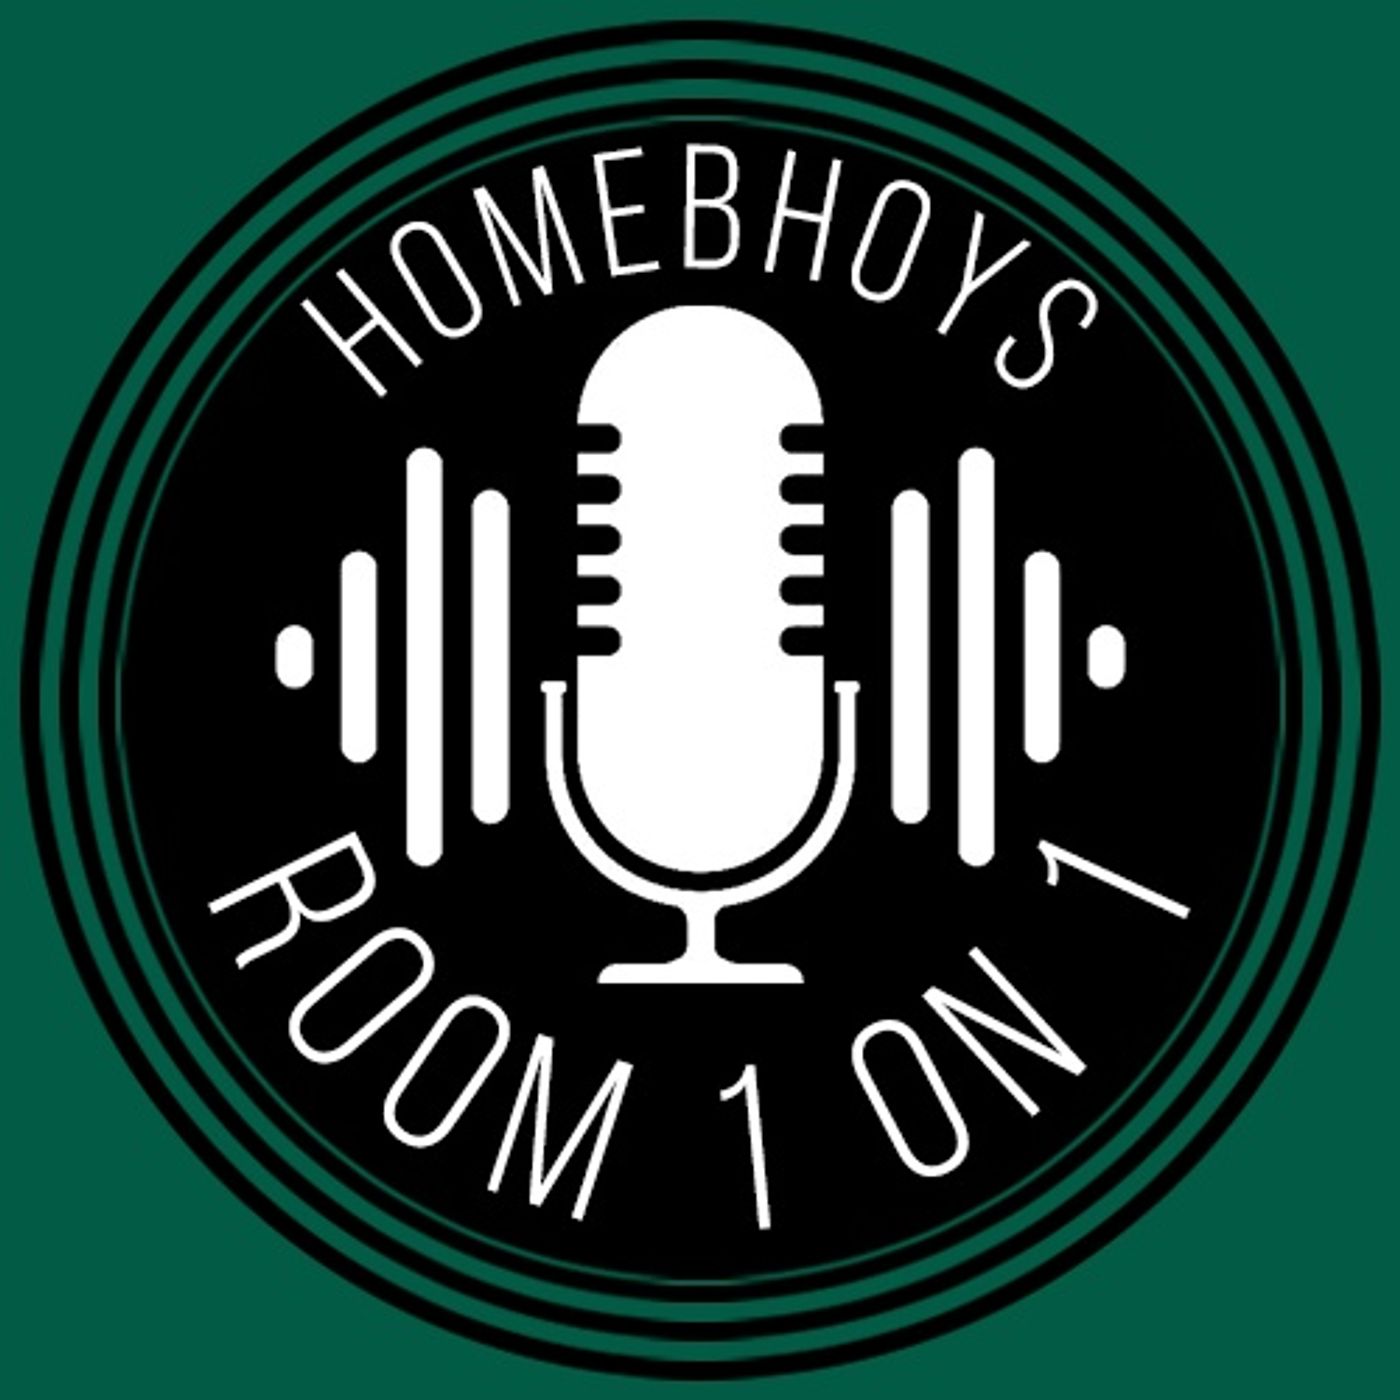 Homebhoys - Room 1 on 1 - St_Johnstone